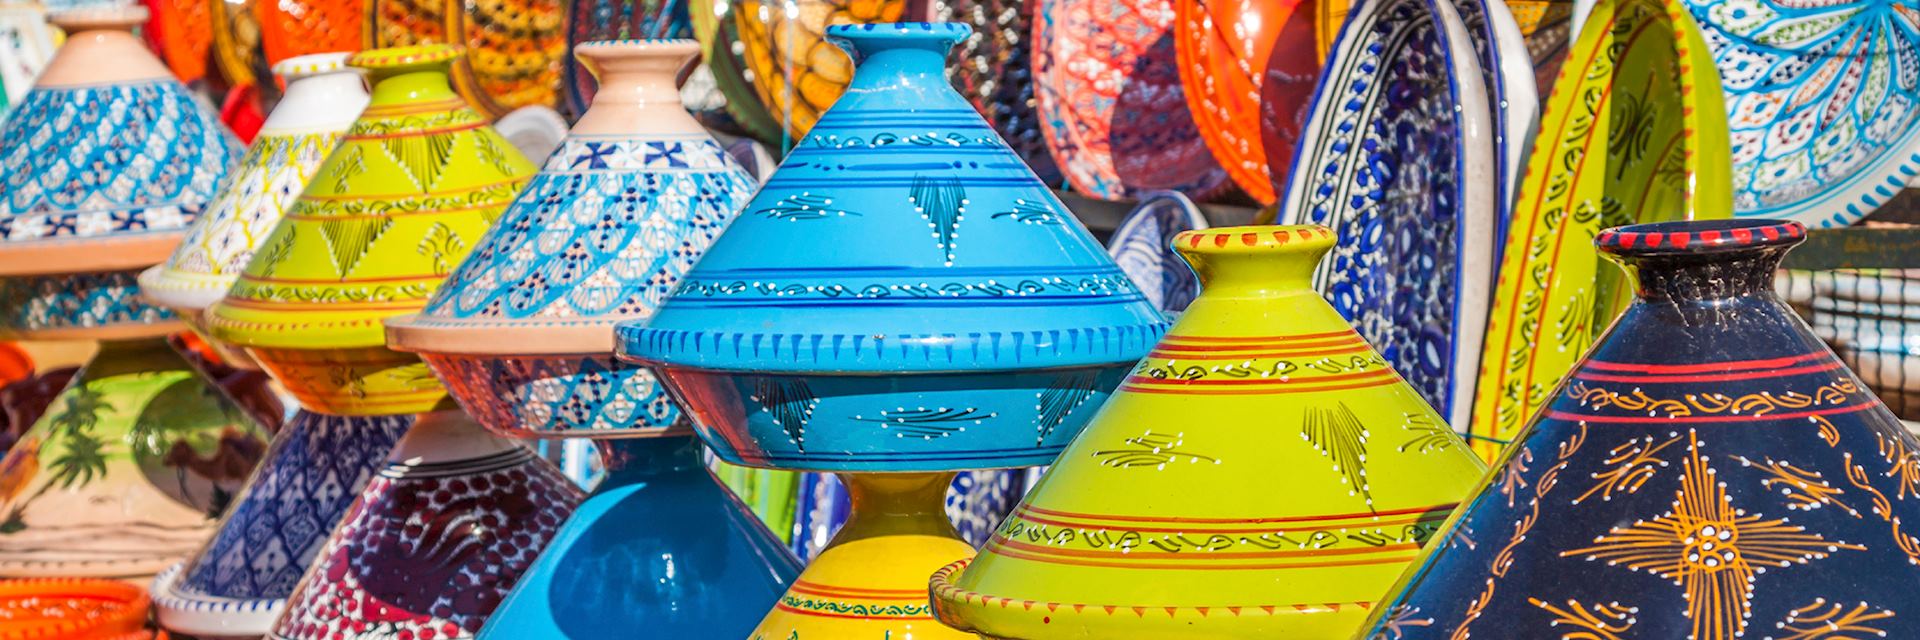 Tajines in the market, Marrakesh